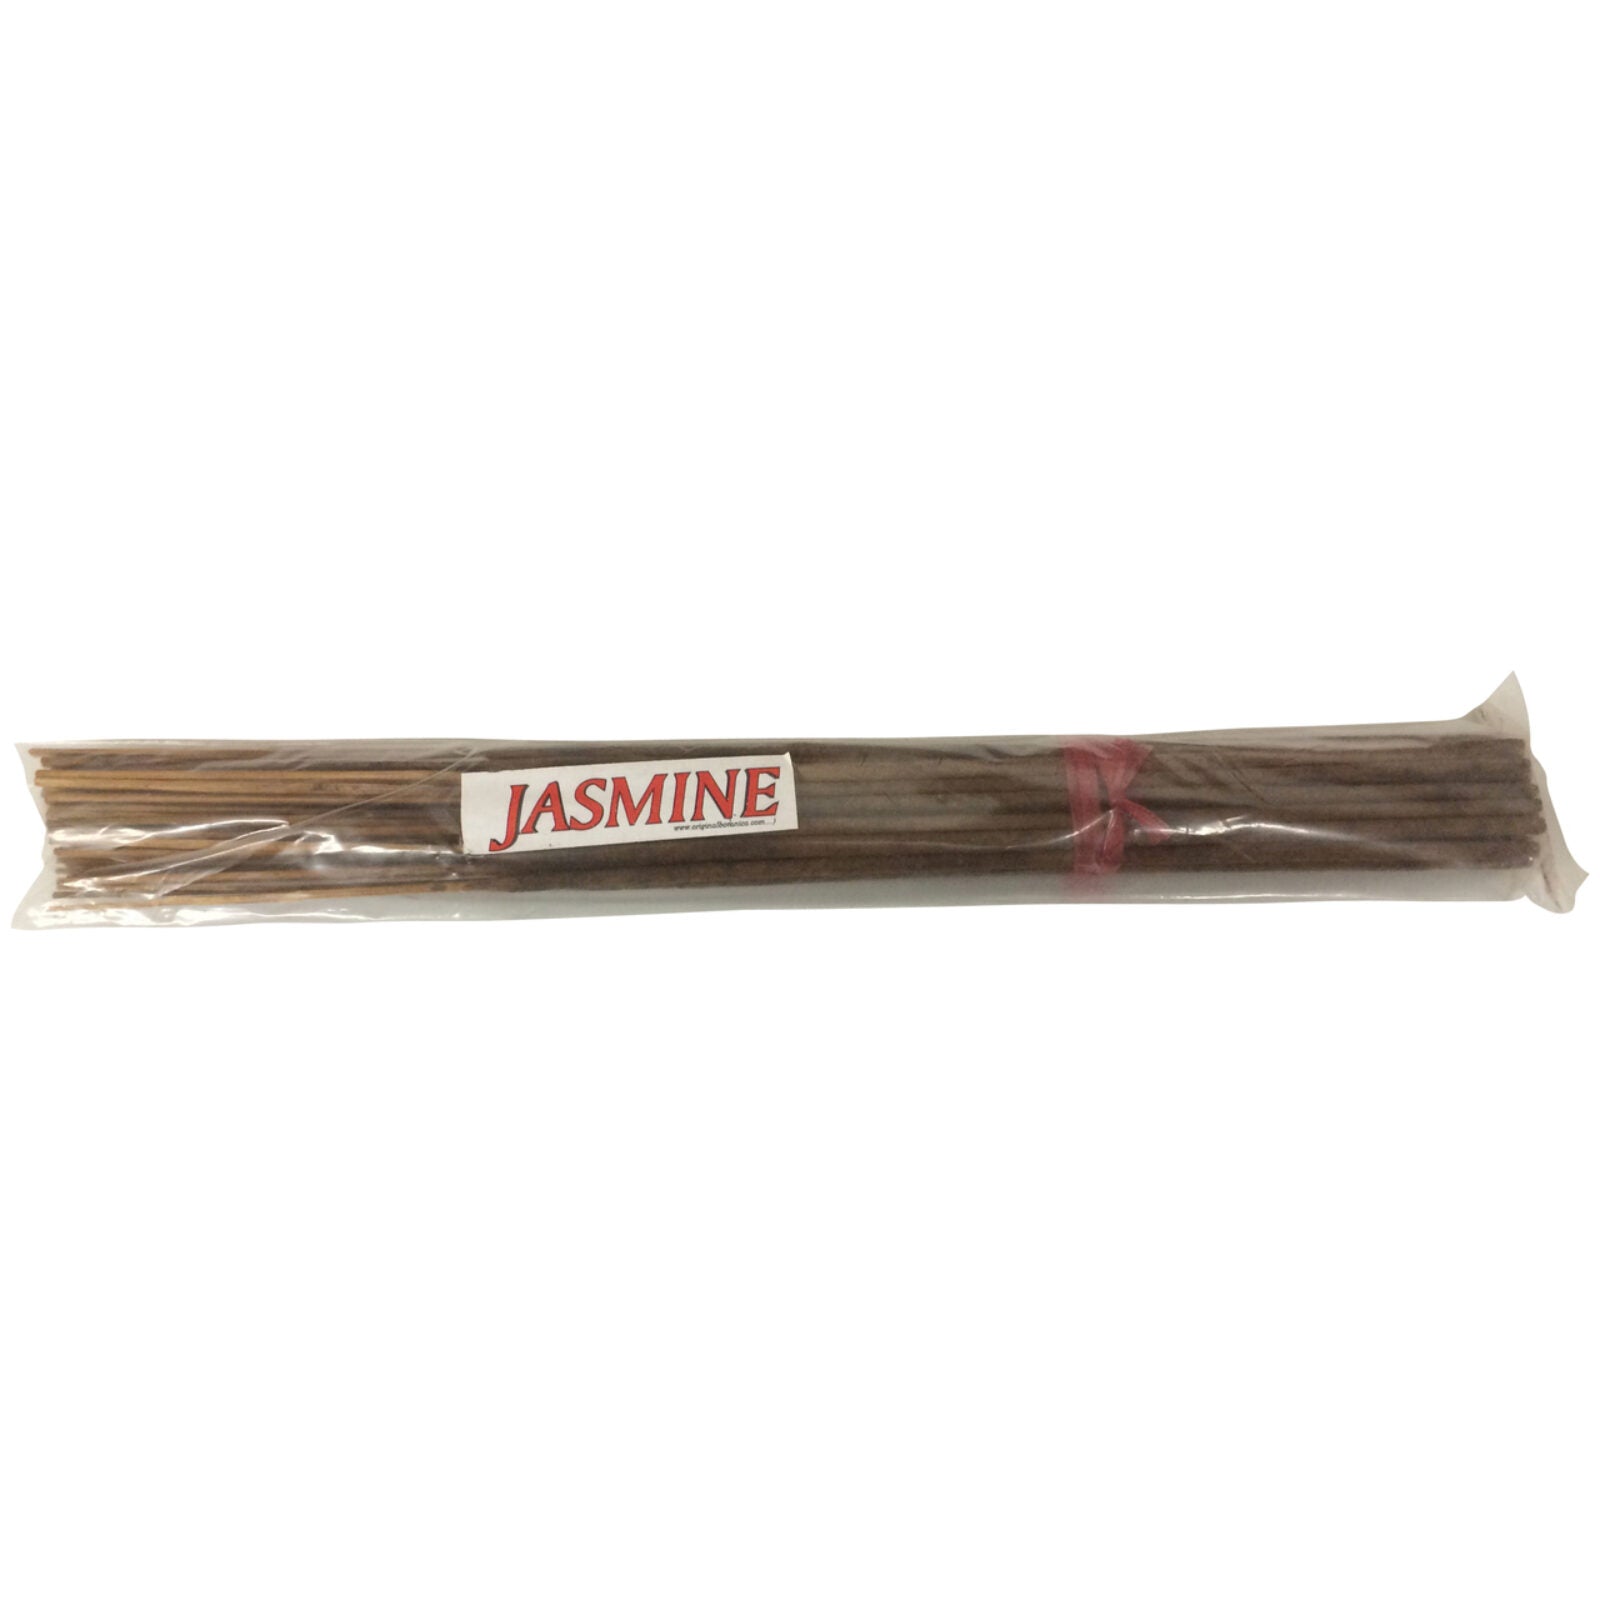 Jasmine Incense Stick 19"